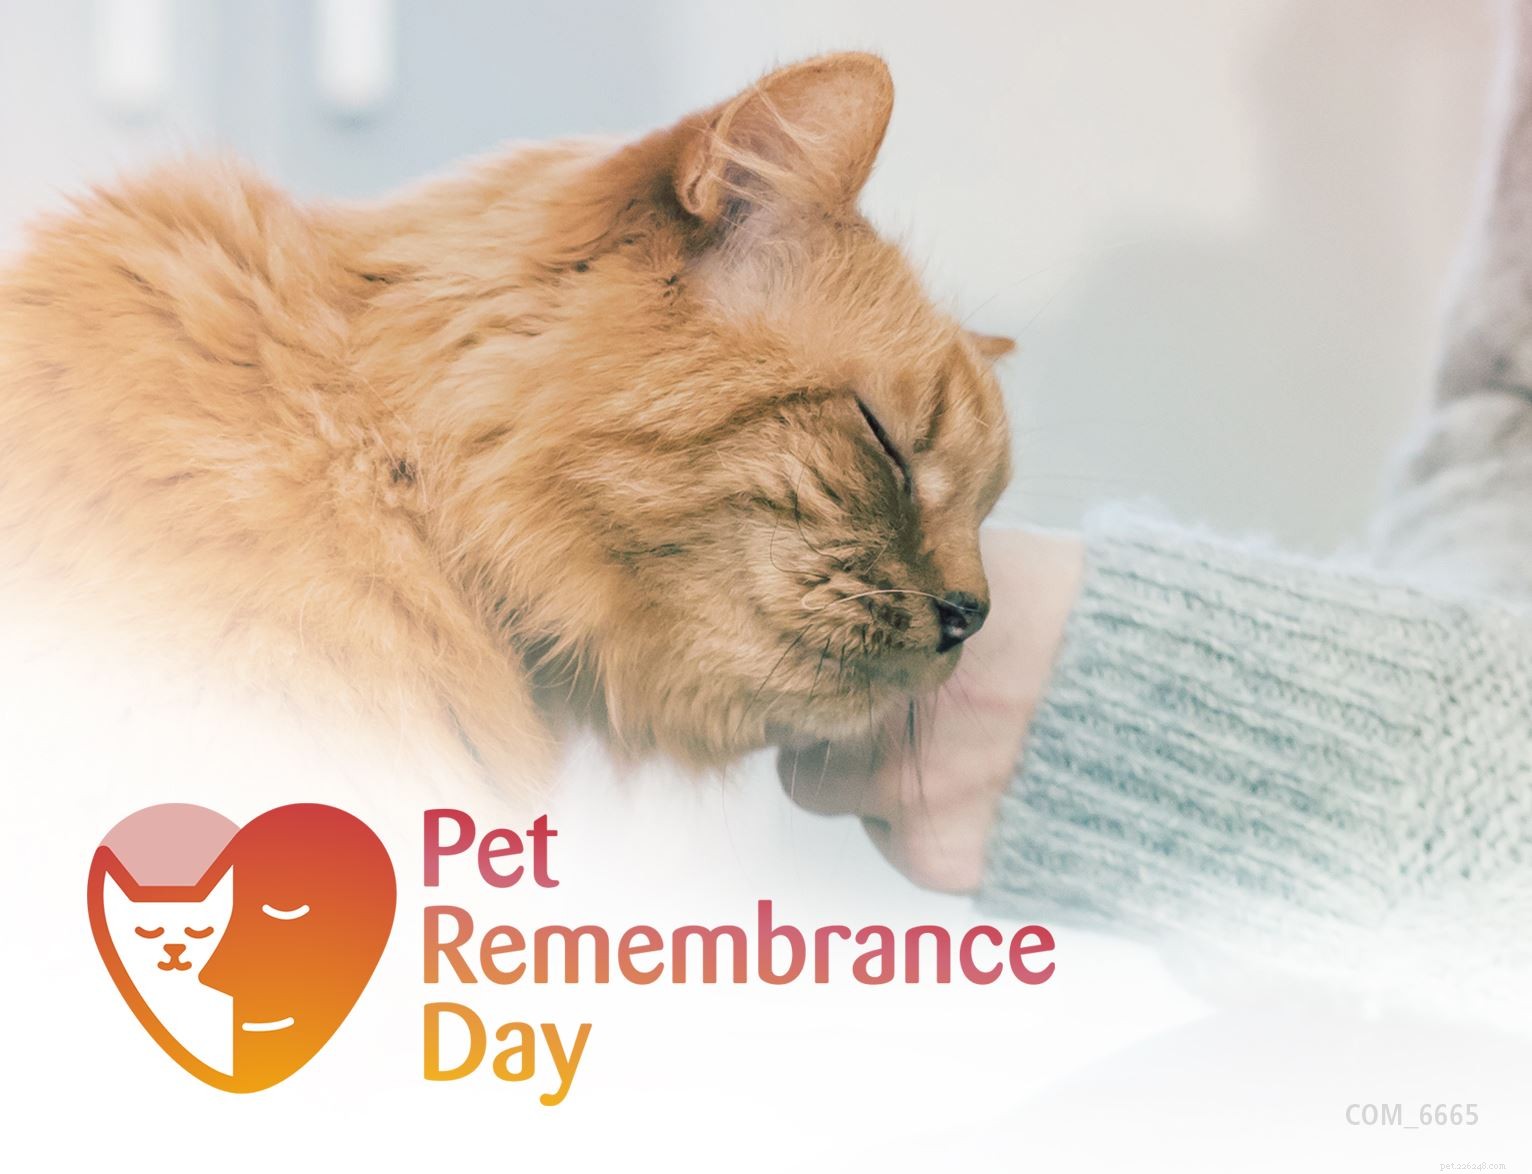 Descubra ideias memoriais especiais para homenagear a memória de seu amado gato neste Dia da Lembrança do Animal de Estimação